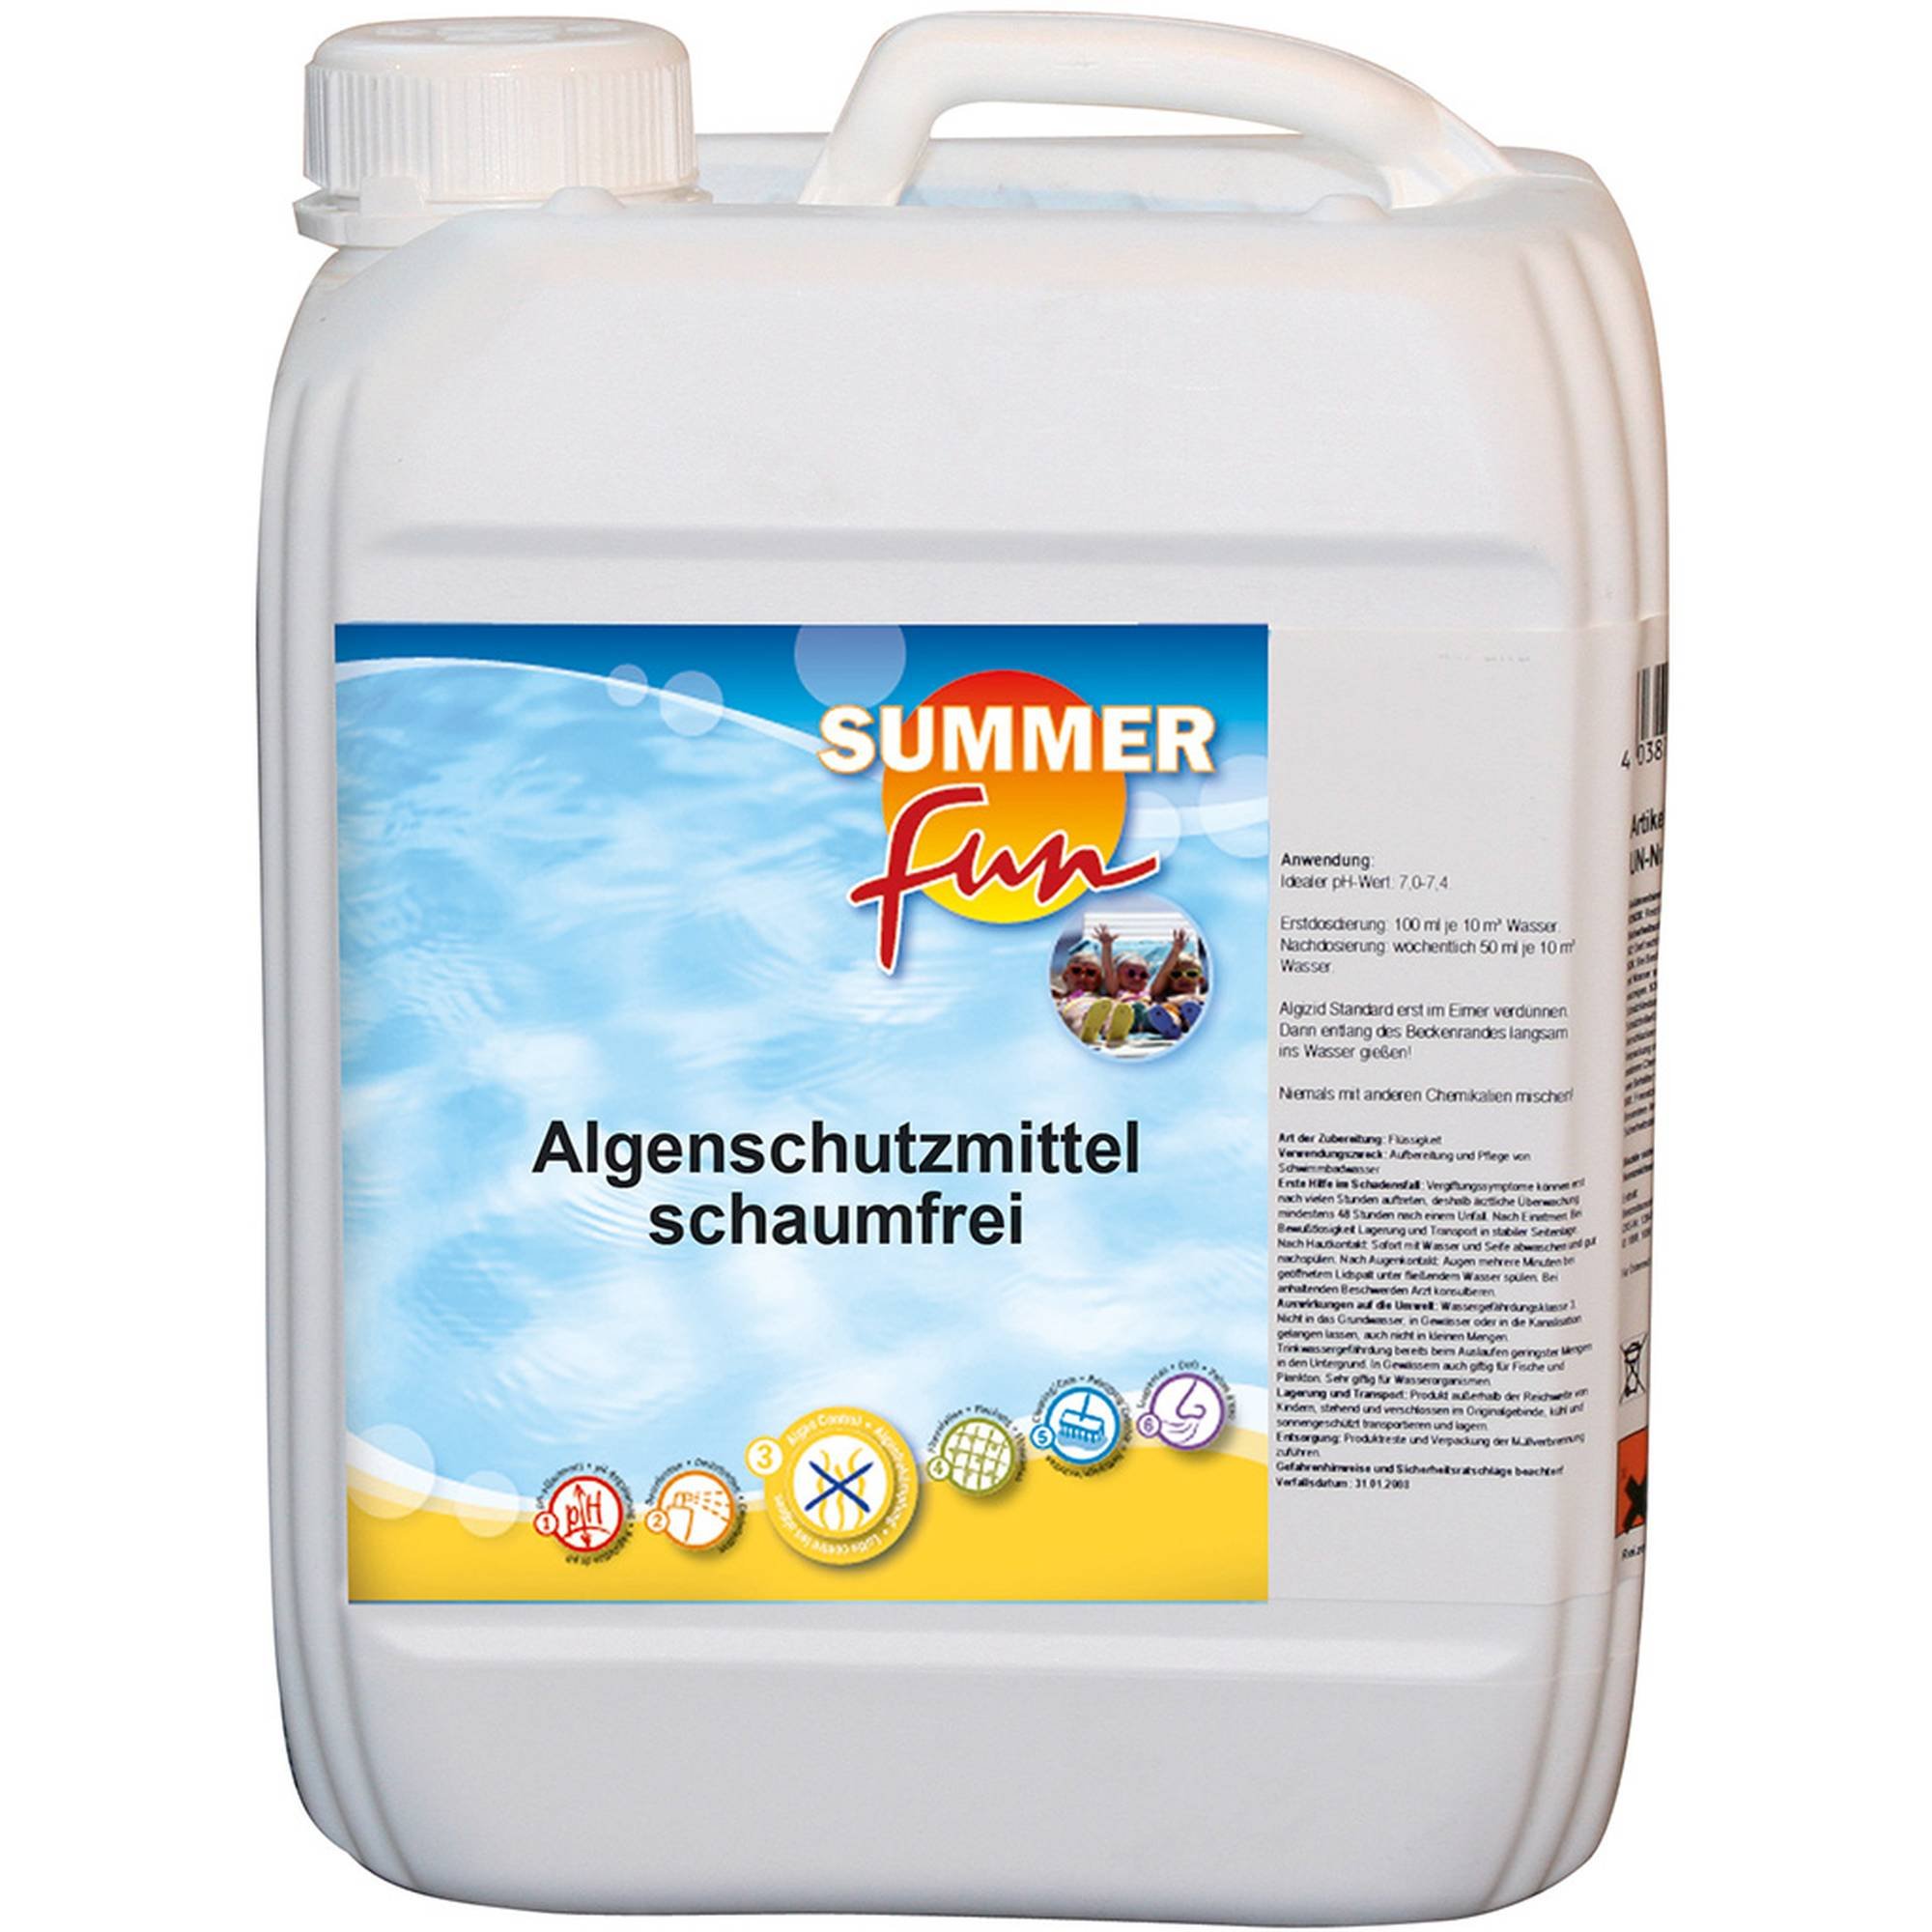 Summer Fun - Algenschutzmittel schaumfrei - Algizid, 5 Ltr.